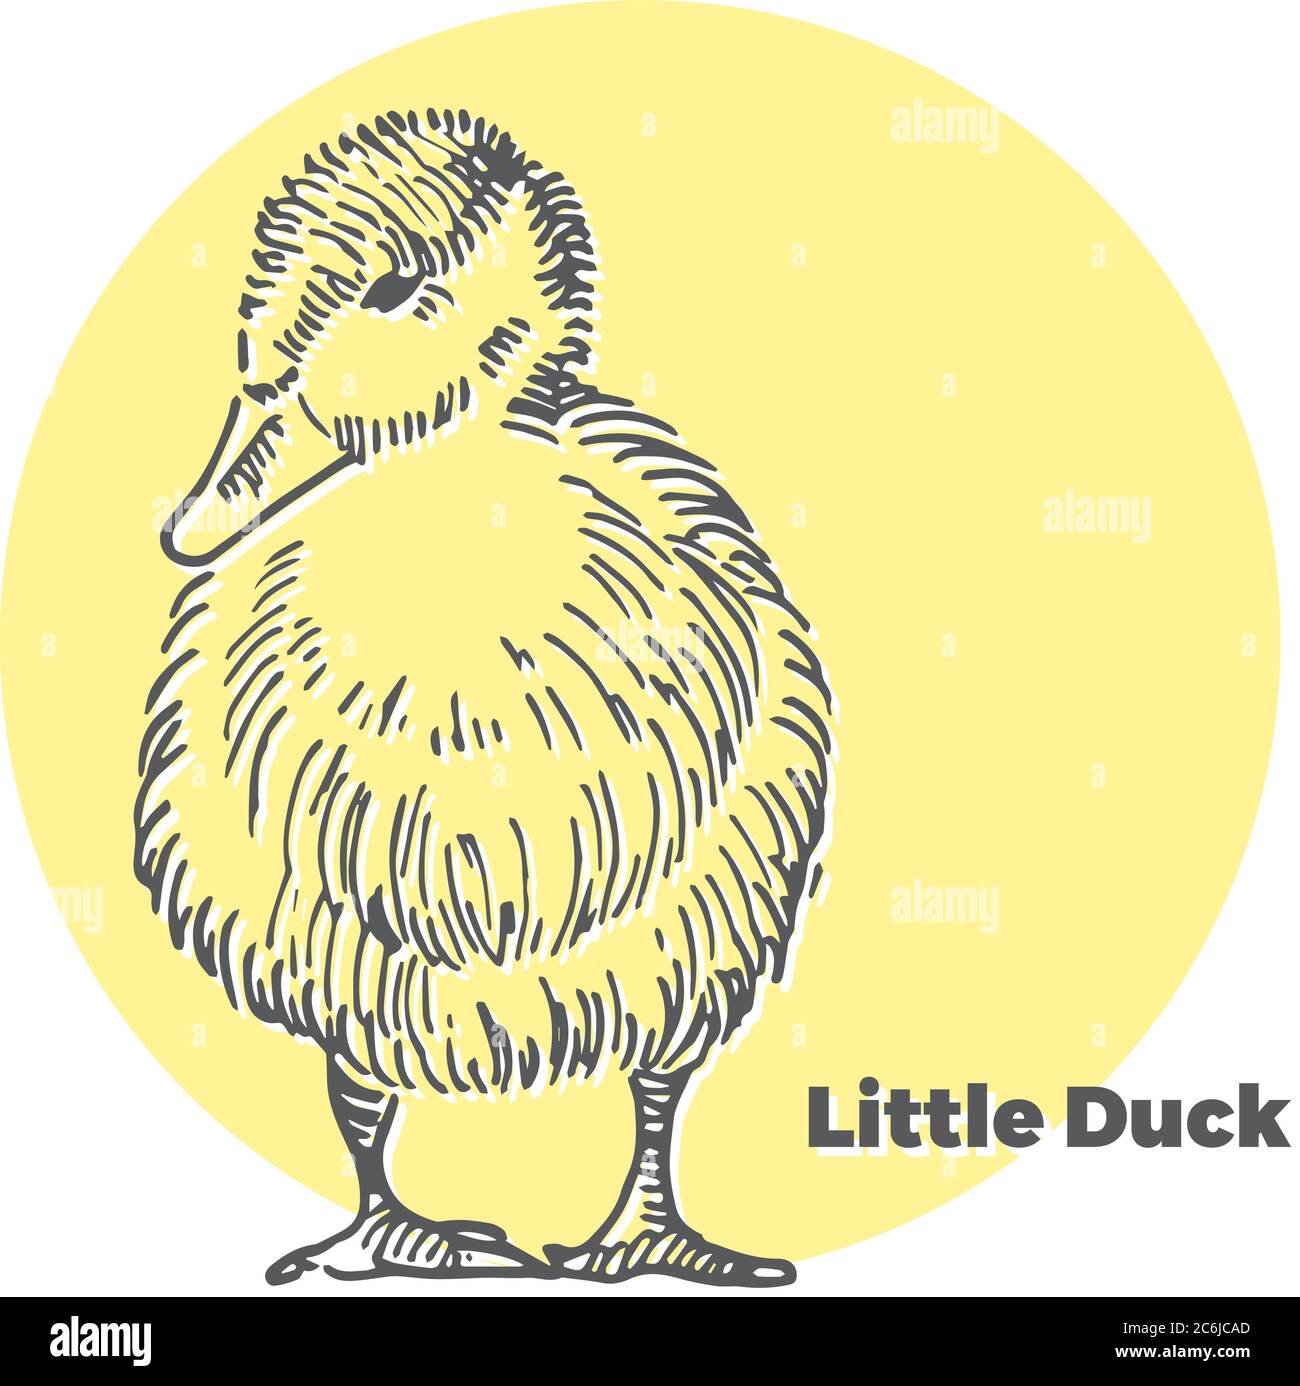 Handgezeichnete Vektor-Skizze von kleine süße Ente mit gelben runden Hintergrund. Stock Vektor